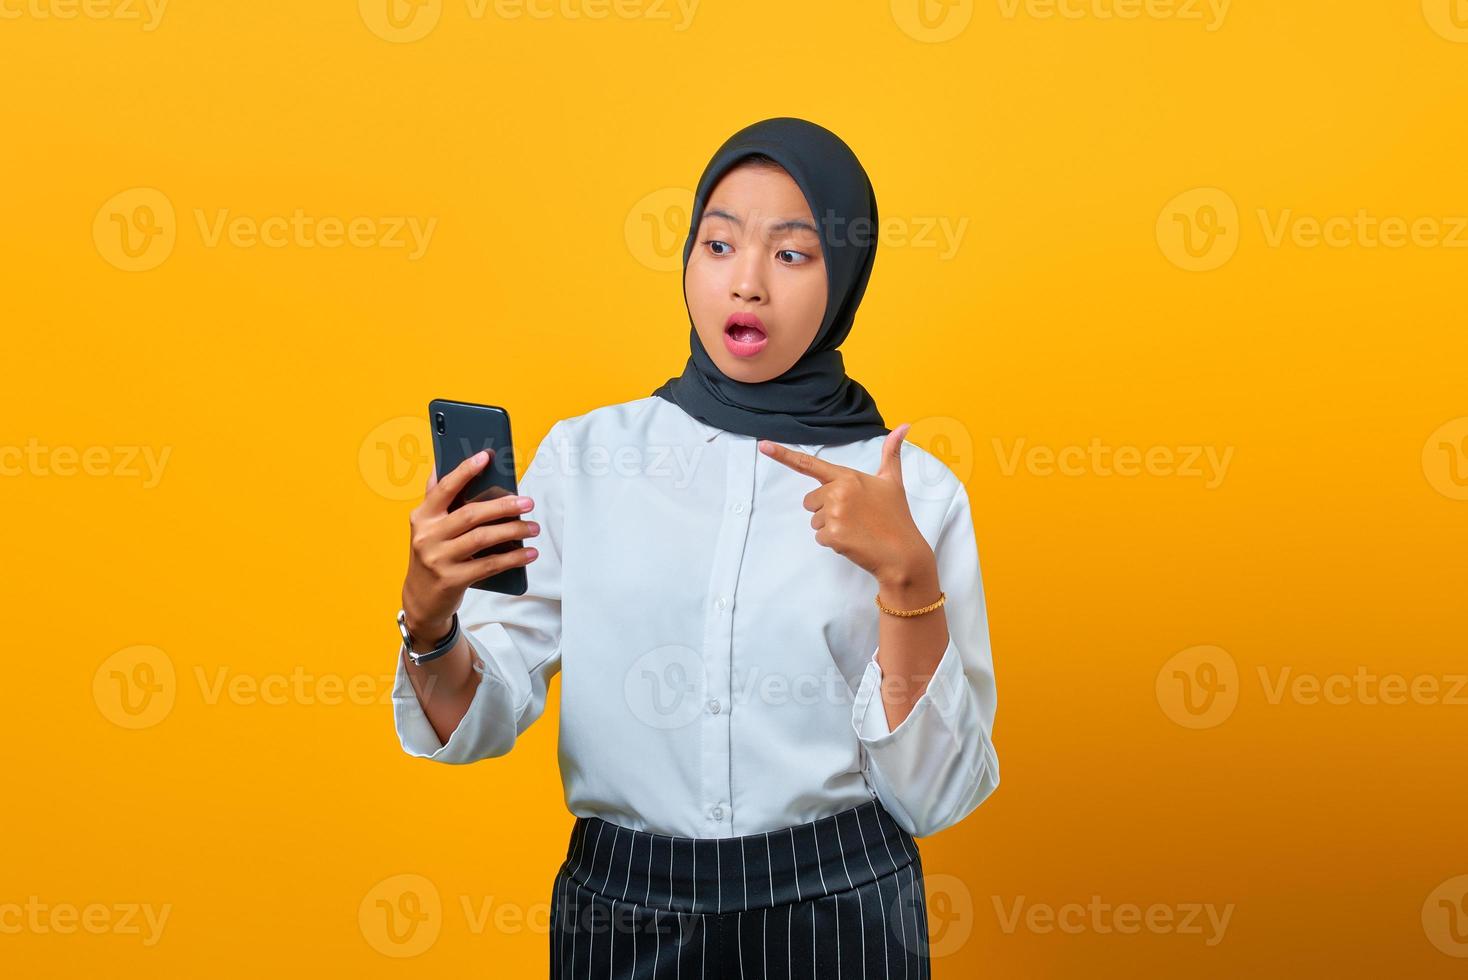 jovem asiática surpresa apontando para o celular isolado sobre fundo amarelo foto